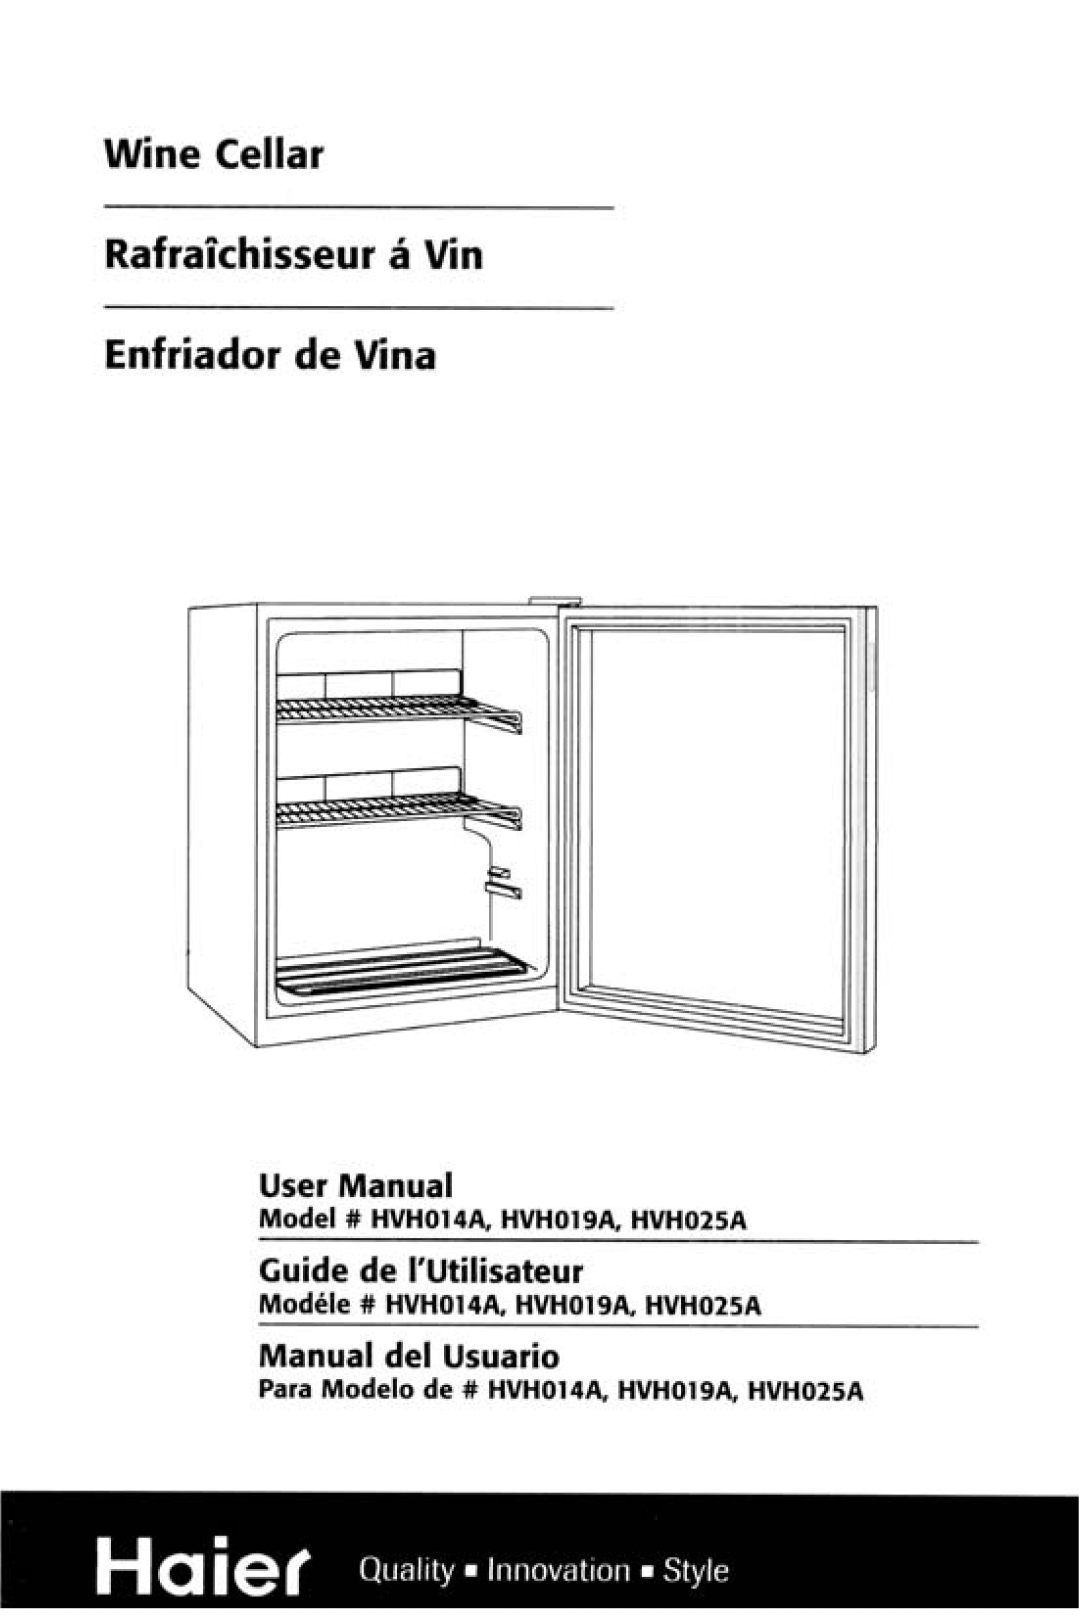 Haier HVH014A manual 